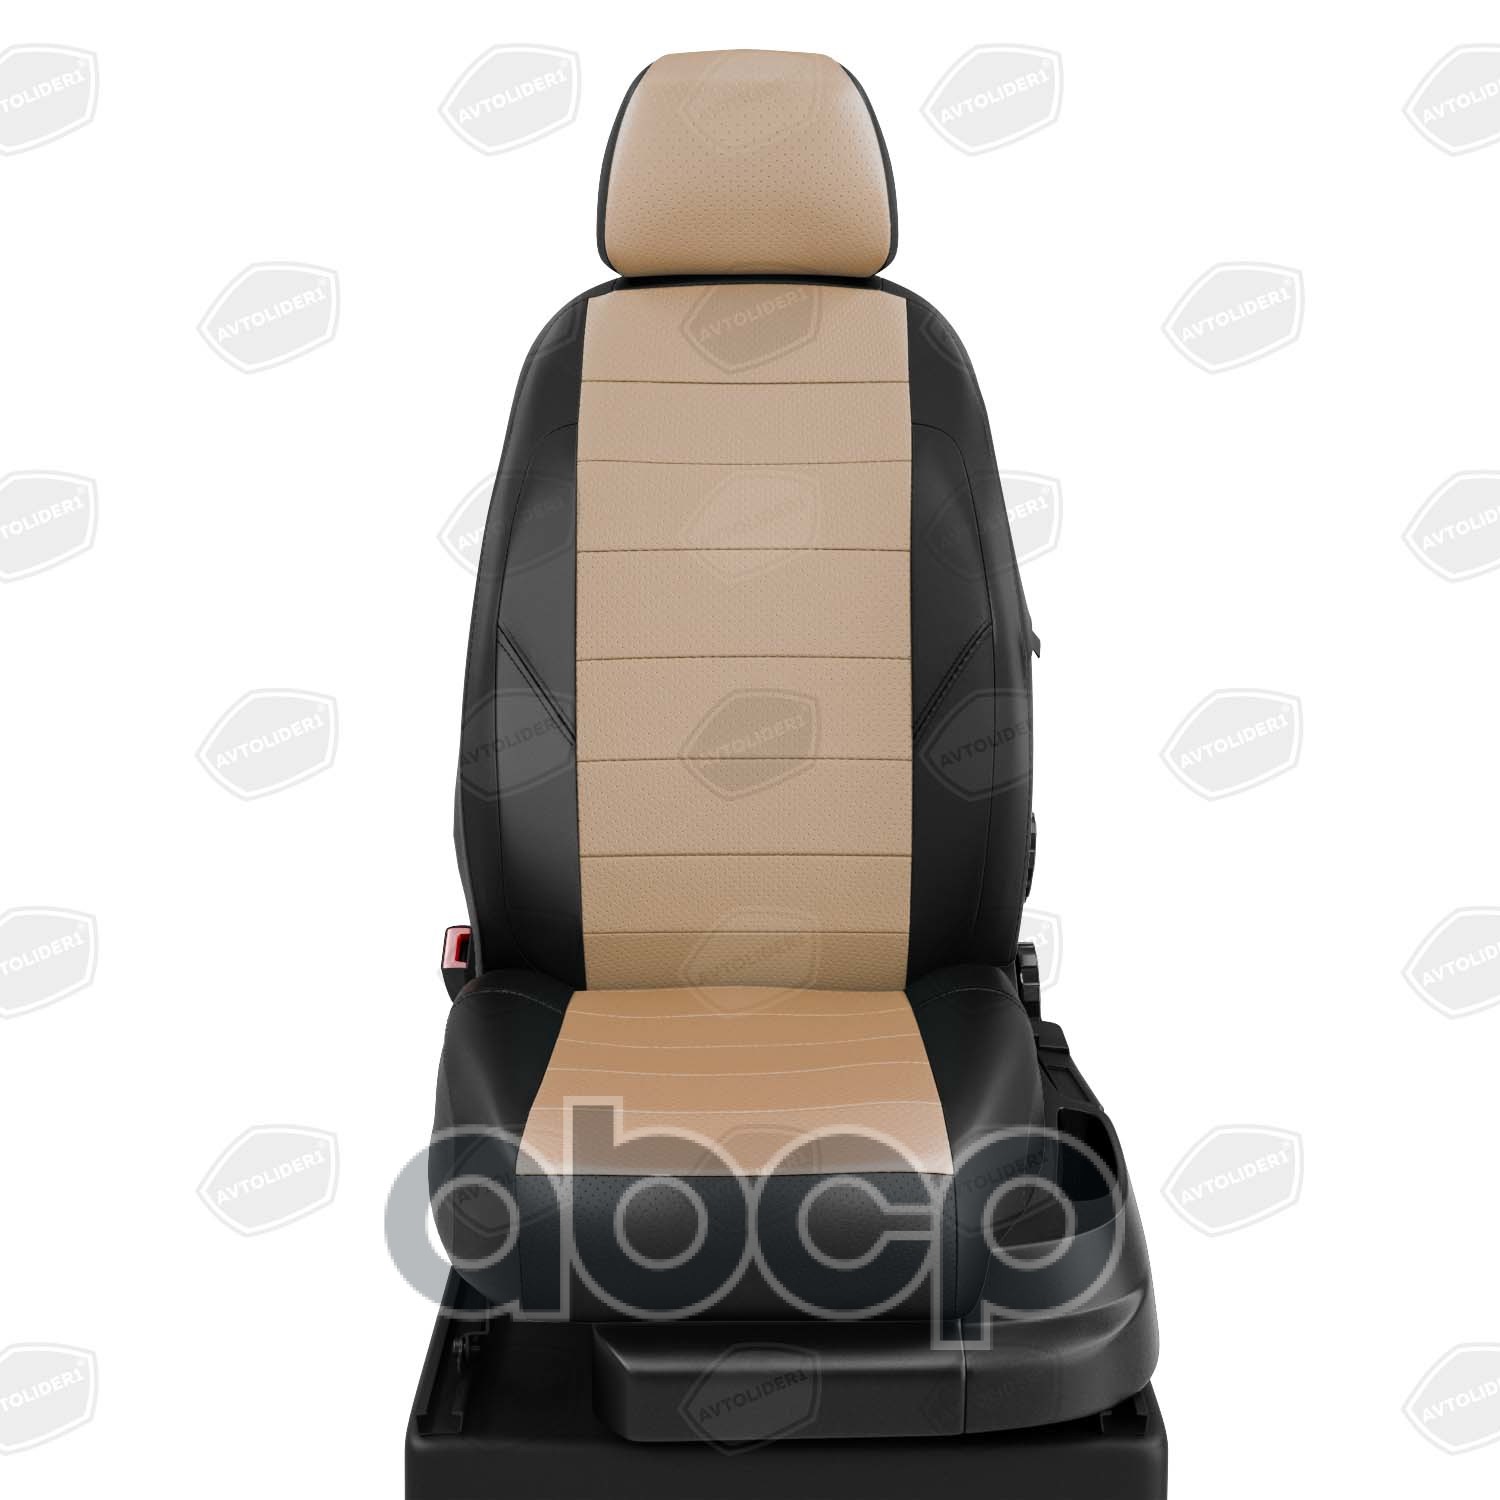 Авточехлы для Ford Mondeo 3 с 2000-2007г. седан, хэтчбек, универсал RECARO (передние сидушки с выступом под колени). Задняя спинка 40 на 60, сиденье единое. Задний подлокотник (молния), 5-подголовников АВТОЛИДЕР FD130503EC04